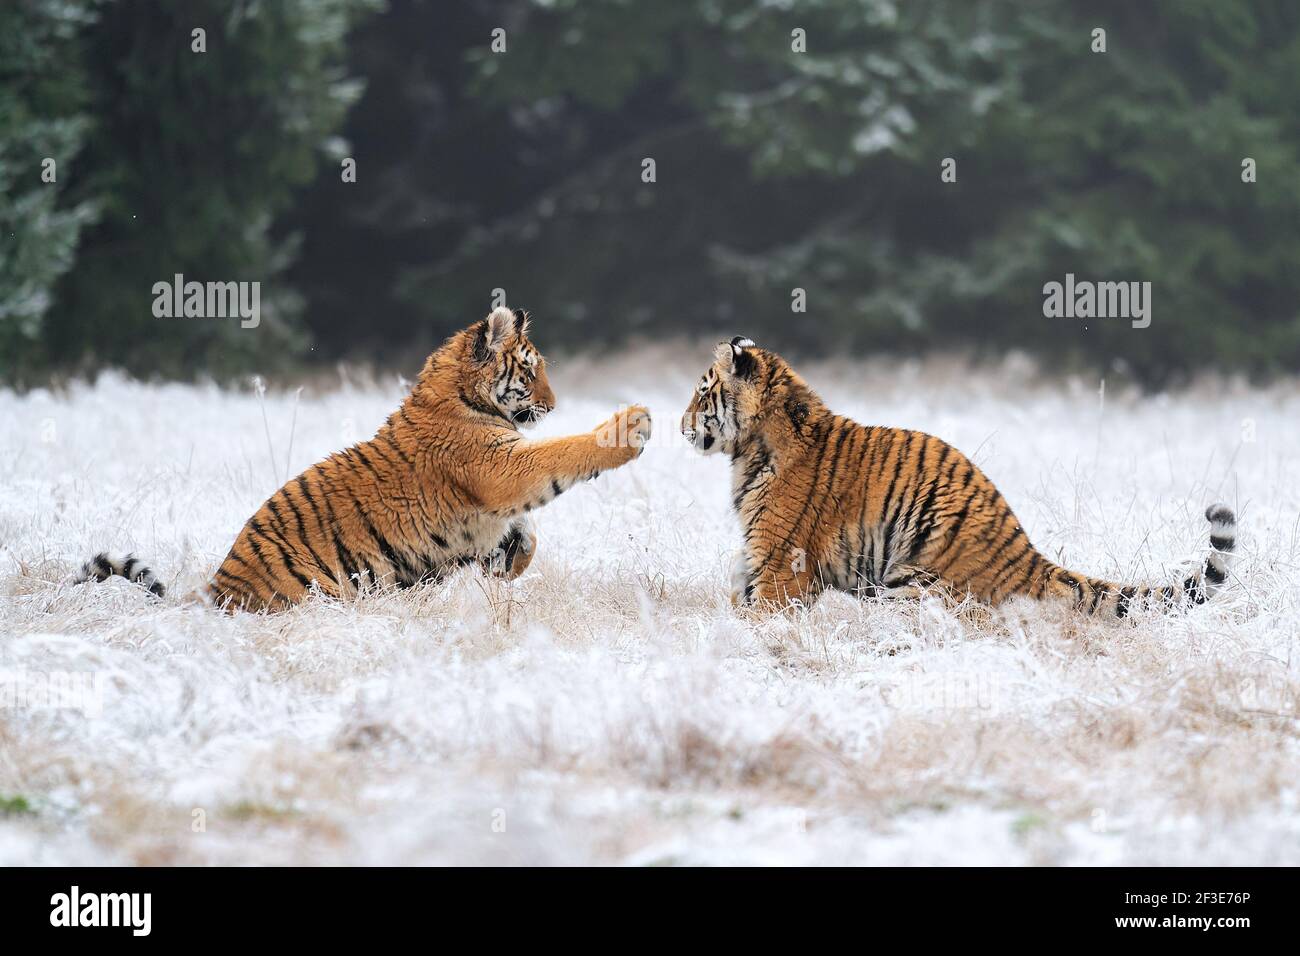 Junge Tiger spielen im Schnee. Sibirischer Tiger im Winter in einem natürlichen Lebensraum. Panthera tigris altaica Stockfoto